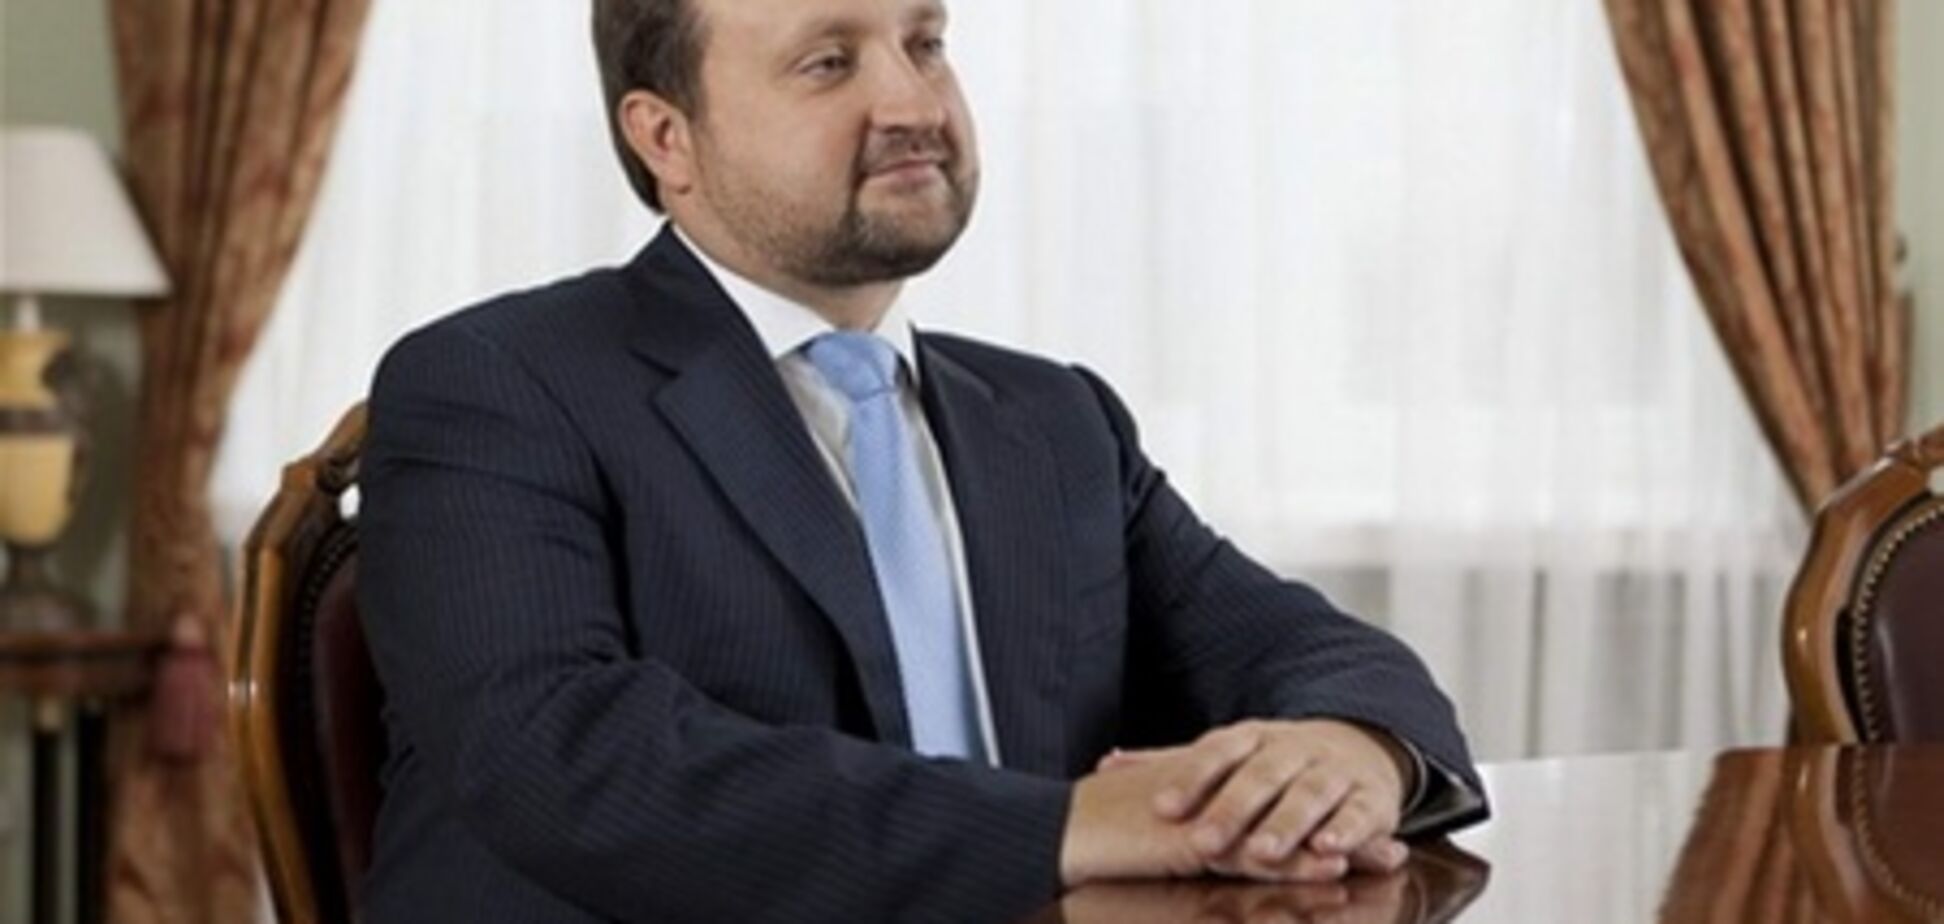 Арбузов считает преждевременным вопрос о своем возможном премьерстве